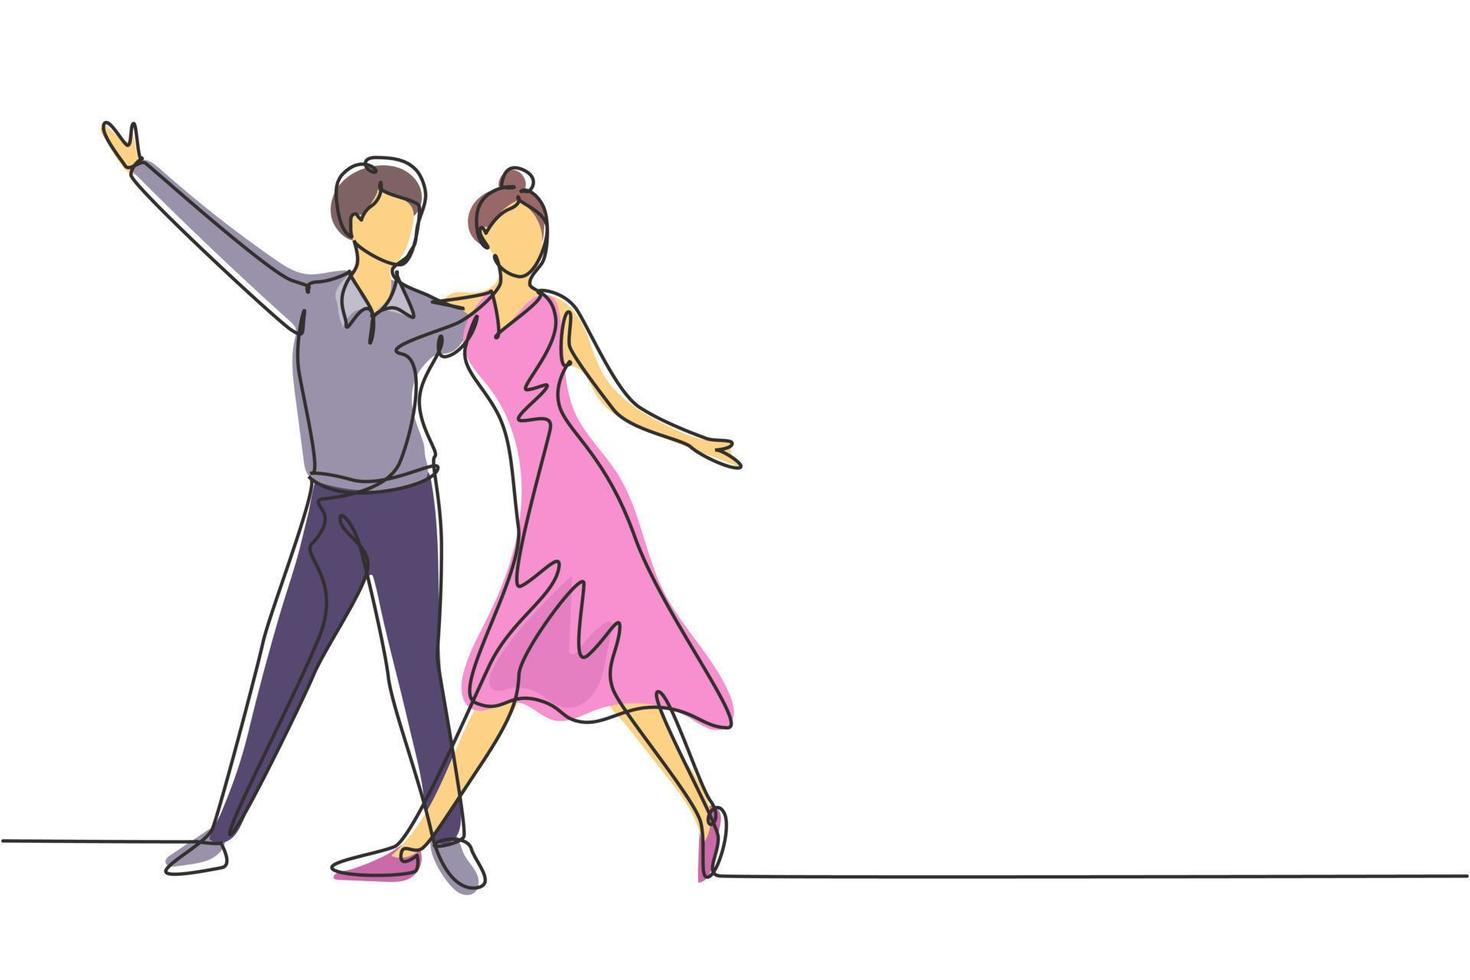 dibujo continuo de una línea pareja de bailarines profesionales masculinos bailando tango, bailes de vals juntos en la pista de baile del concurso de baile. actividad divertida. Ilustración gráfica de vector de diseño de dibujo de una sola línea